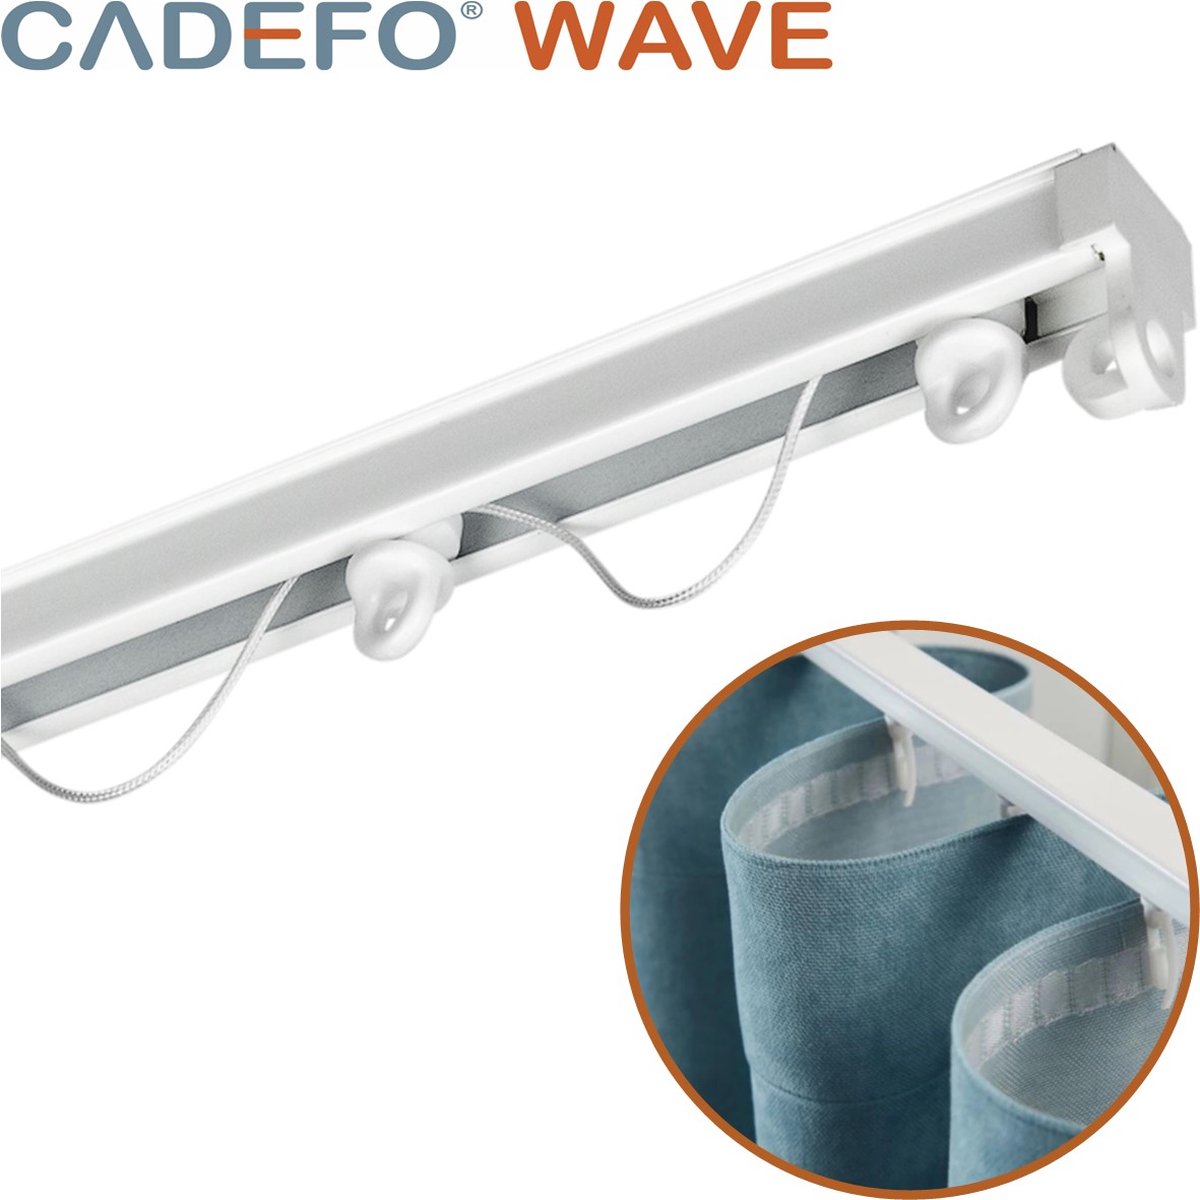 CADEFO WAVE (451 - 500 cm) Gordijnrails - Compleet op maat! - UIT 1 STUK - Leverbaar tot 6 meter - Plafondbevestiging - Lengte 470 cm